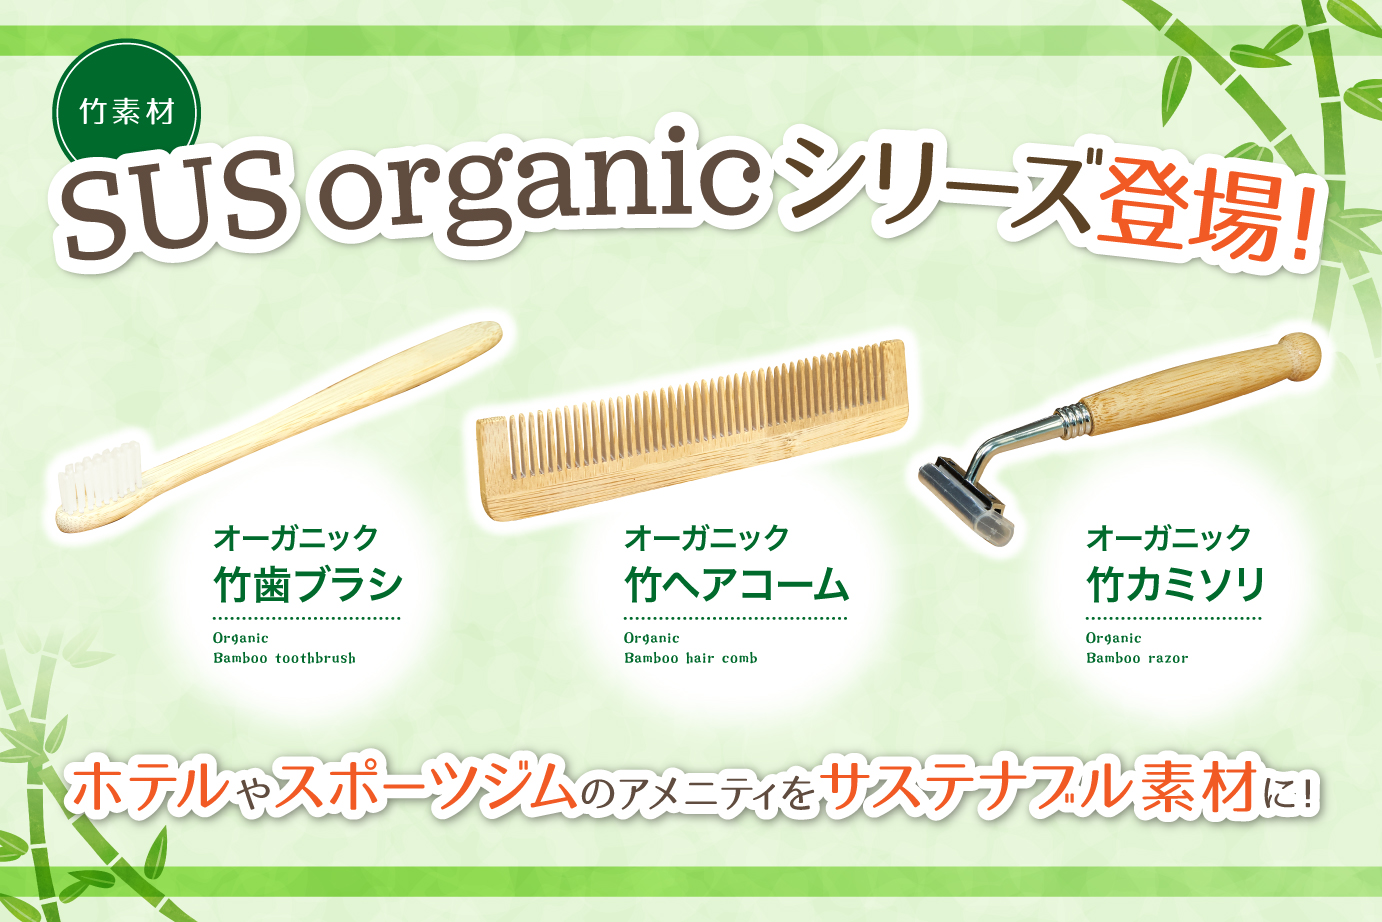 竹素材のアメニティ『SUS organic』新発売！歯ブラシ、ヘアコーム